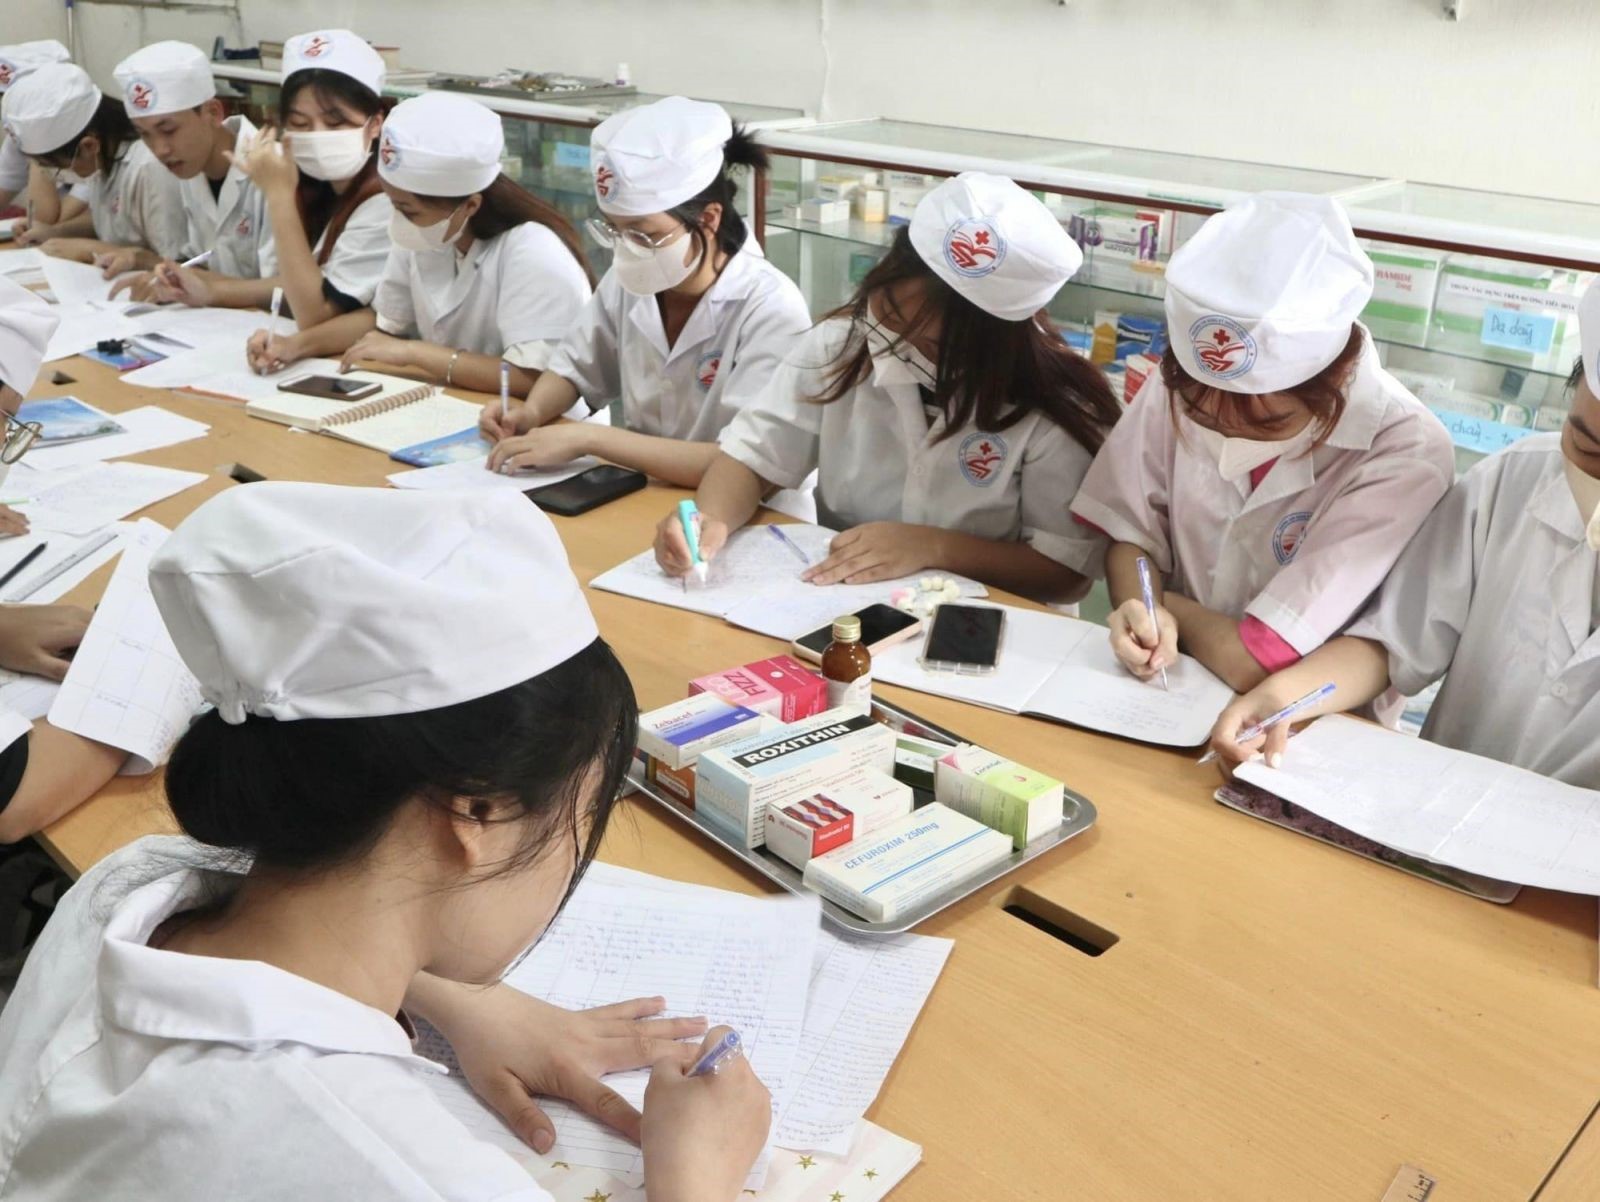 Ngành Y tế Quảng Ninh chú trọng các chuyên ngành đào tạo sau đại học và các lớp bồi dưỡng cho các đối tượng công chức, viên chức nhằm nâng cao trình độ quản lý, kỹ năng nghề nghiệp và trình độ chuyên môn.